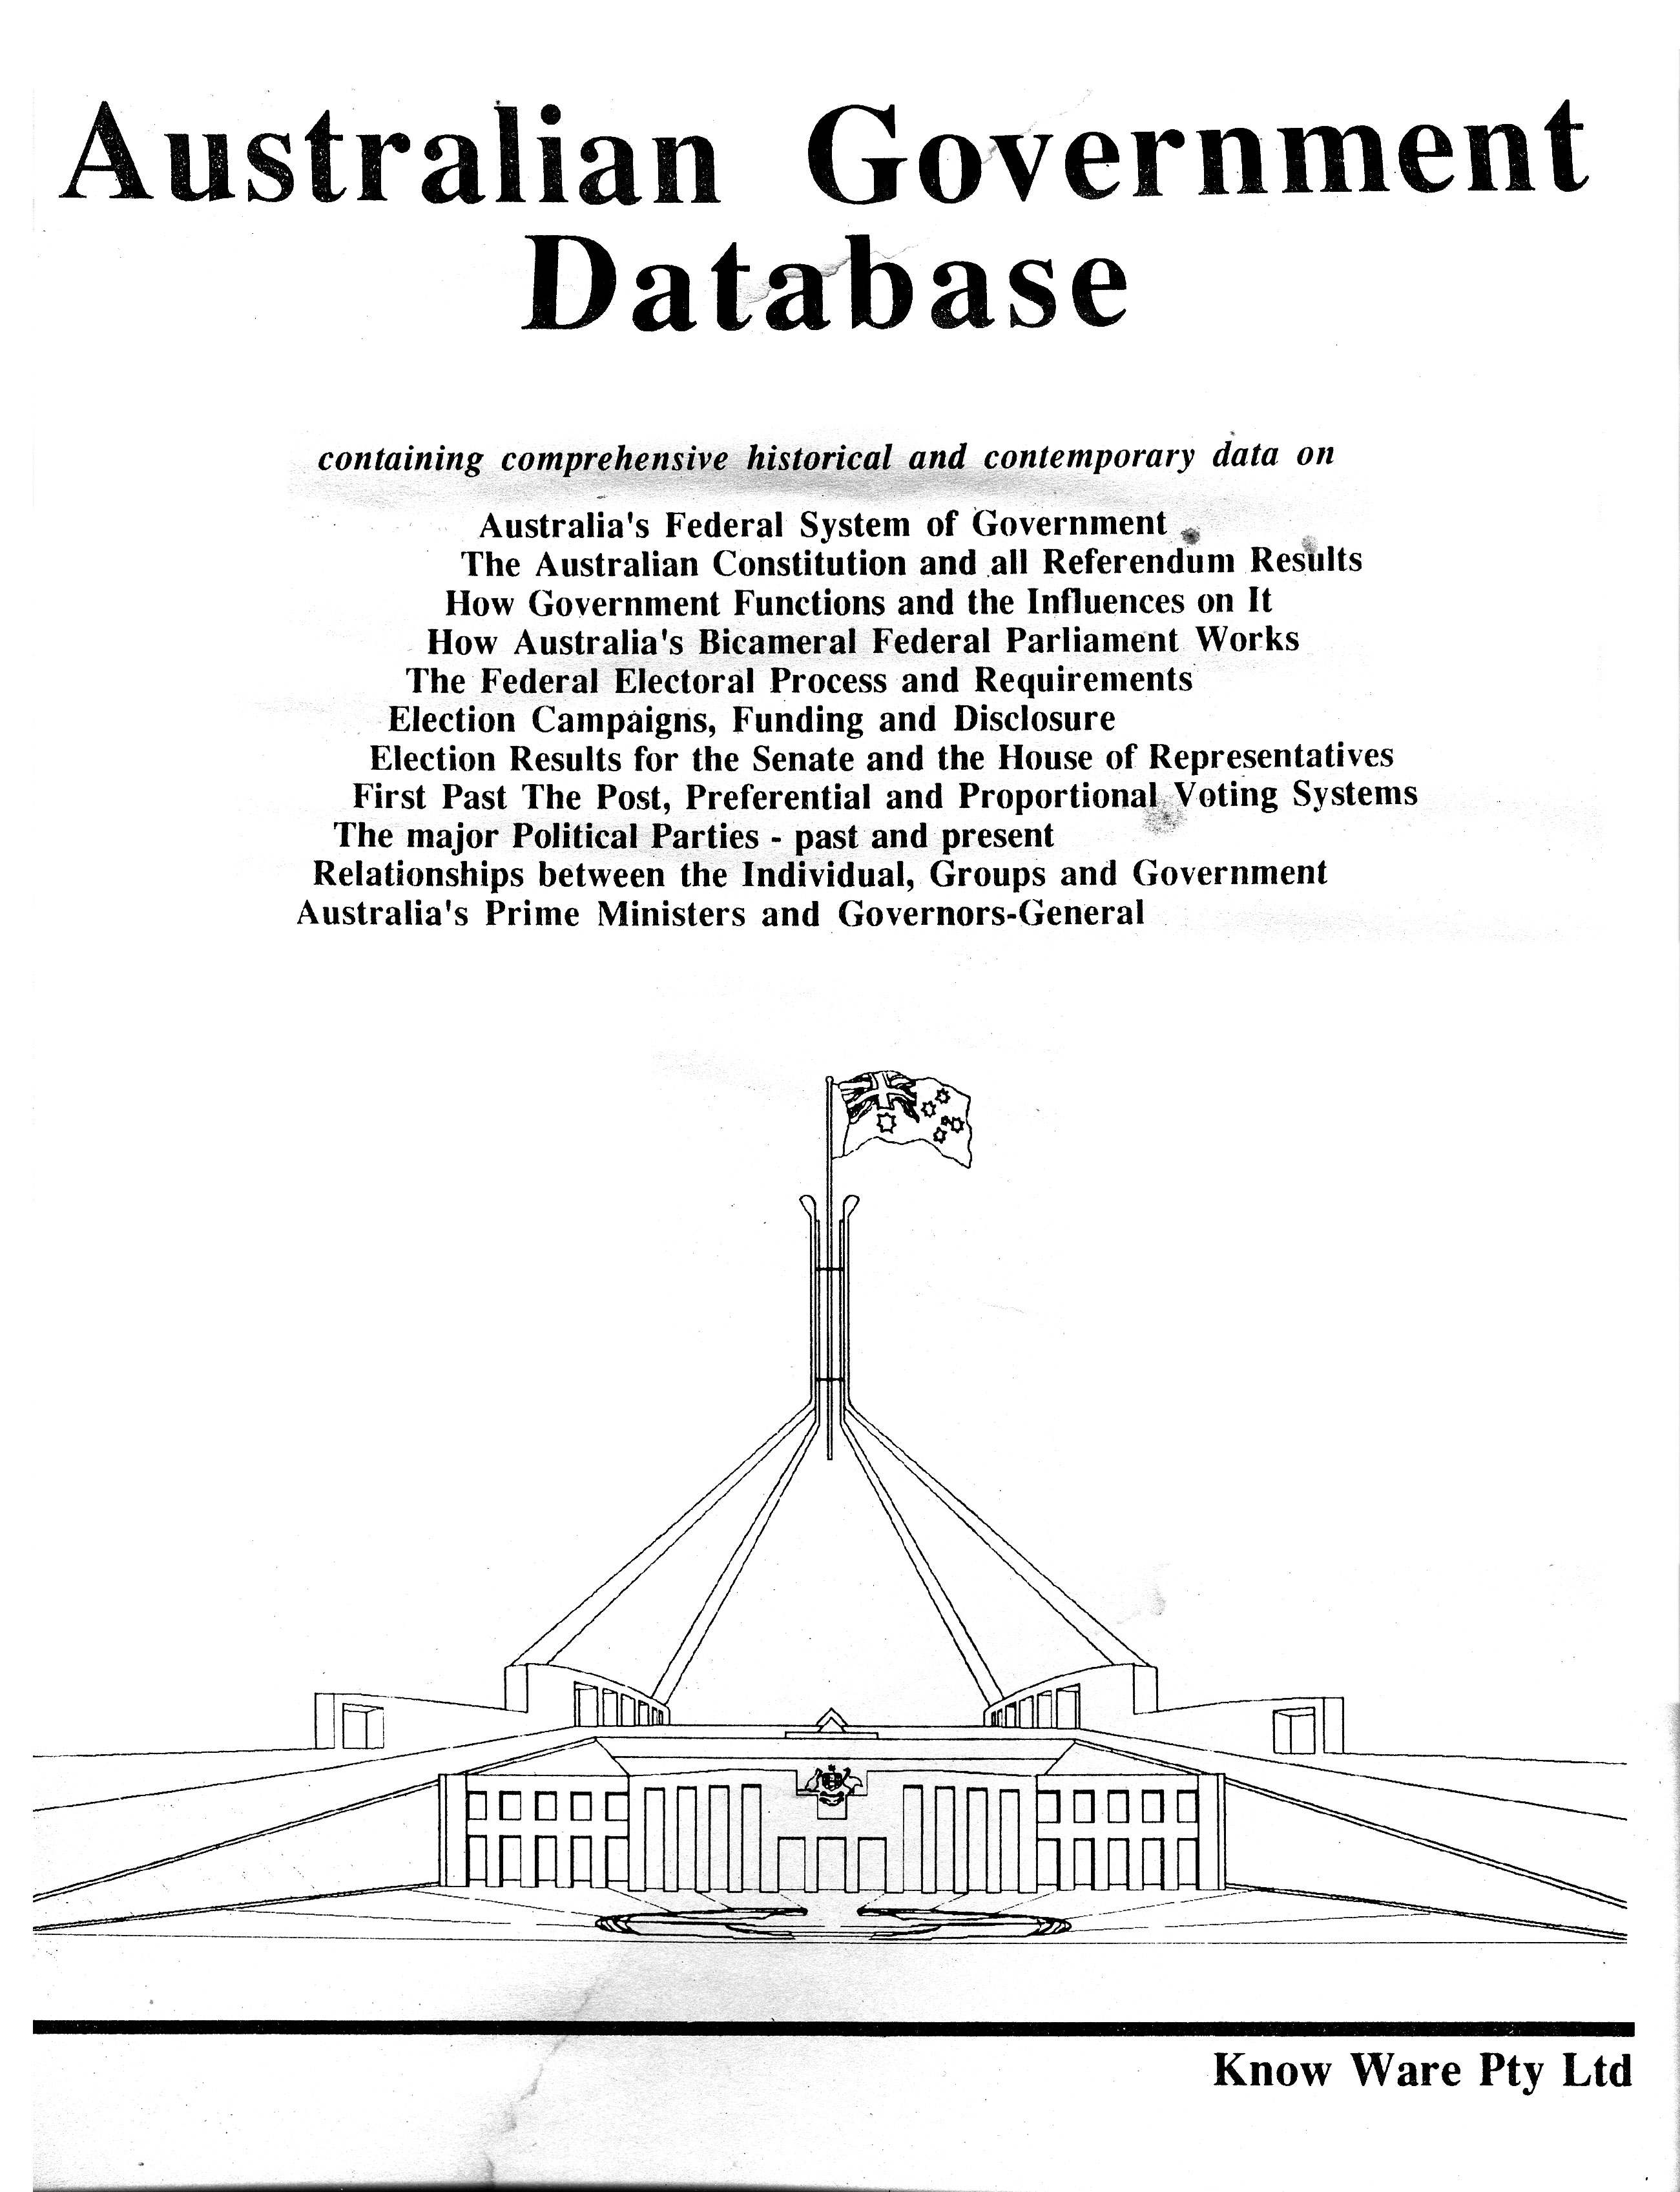 The Australian Government Database folder cover